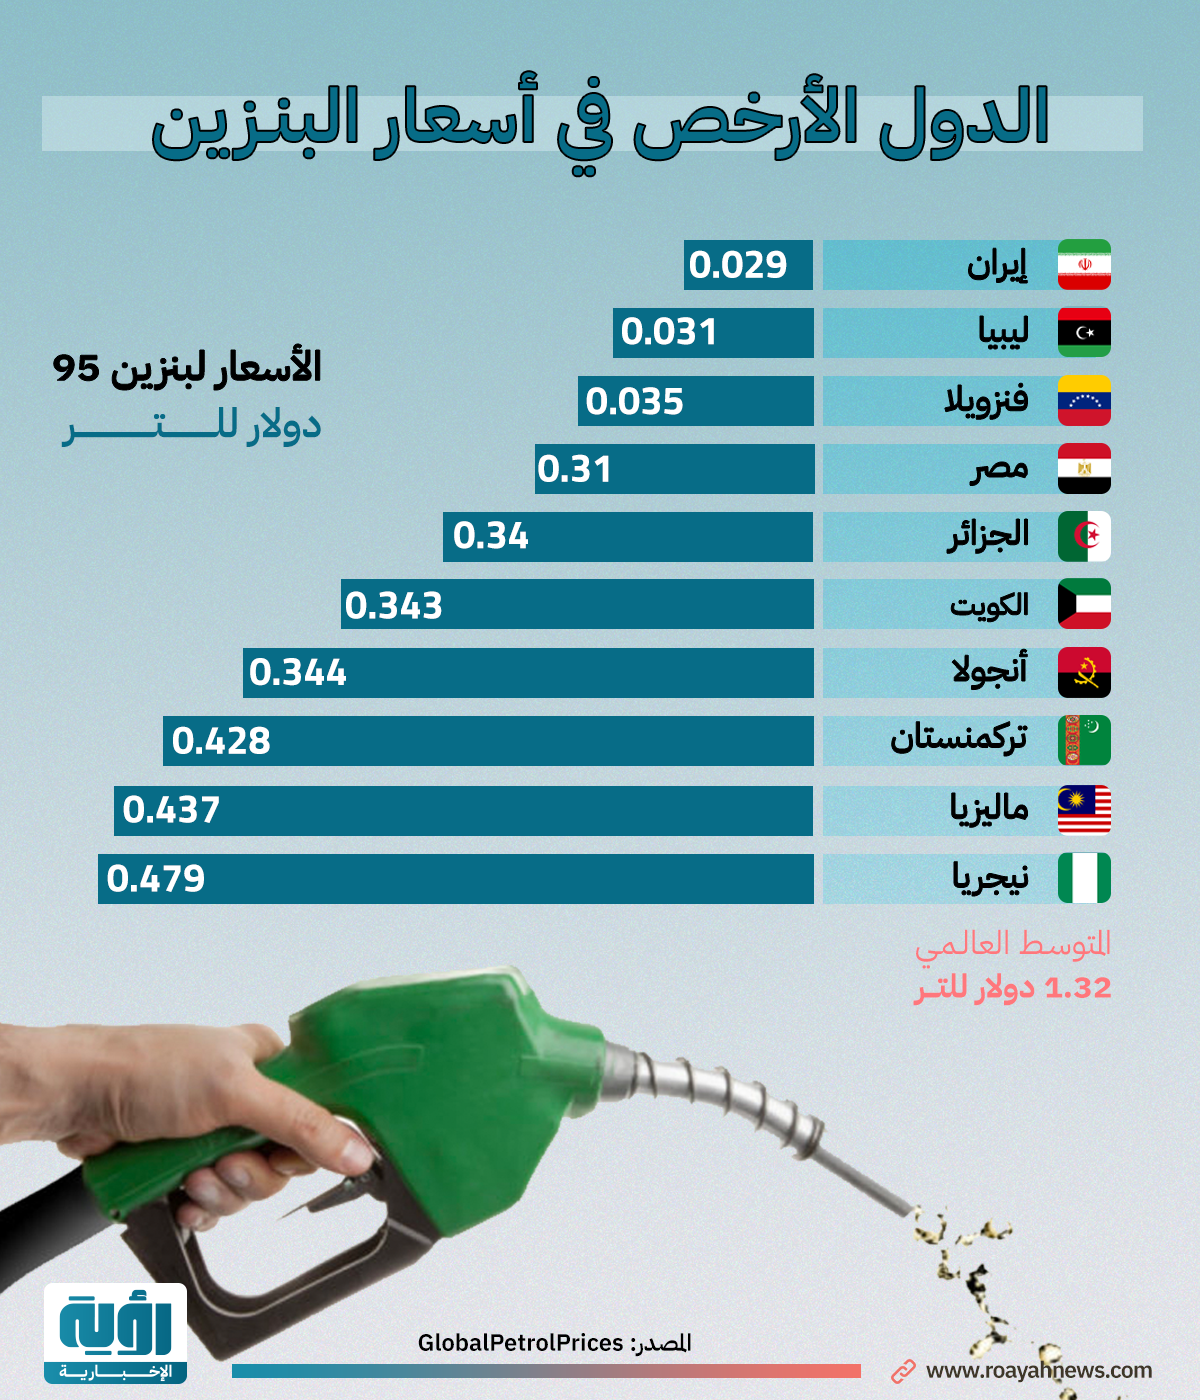 الدول الأرخص في أسعار البنزين